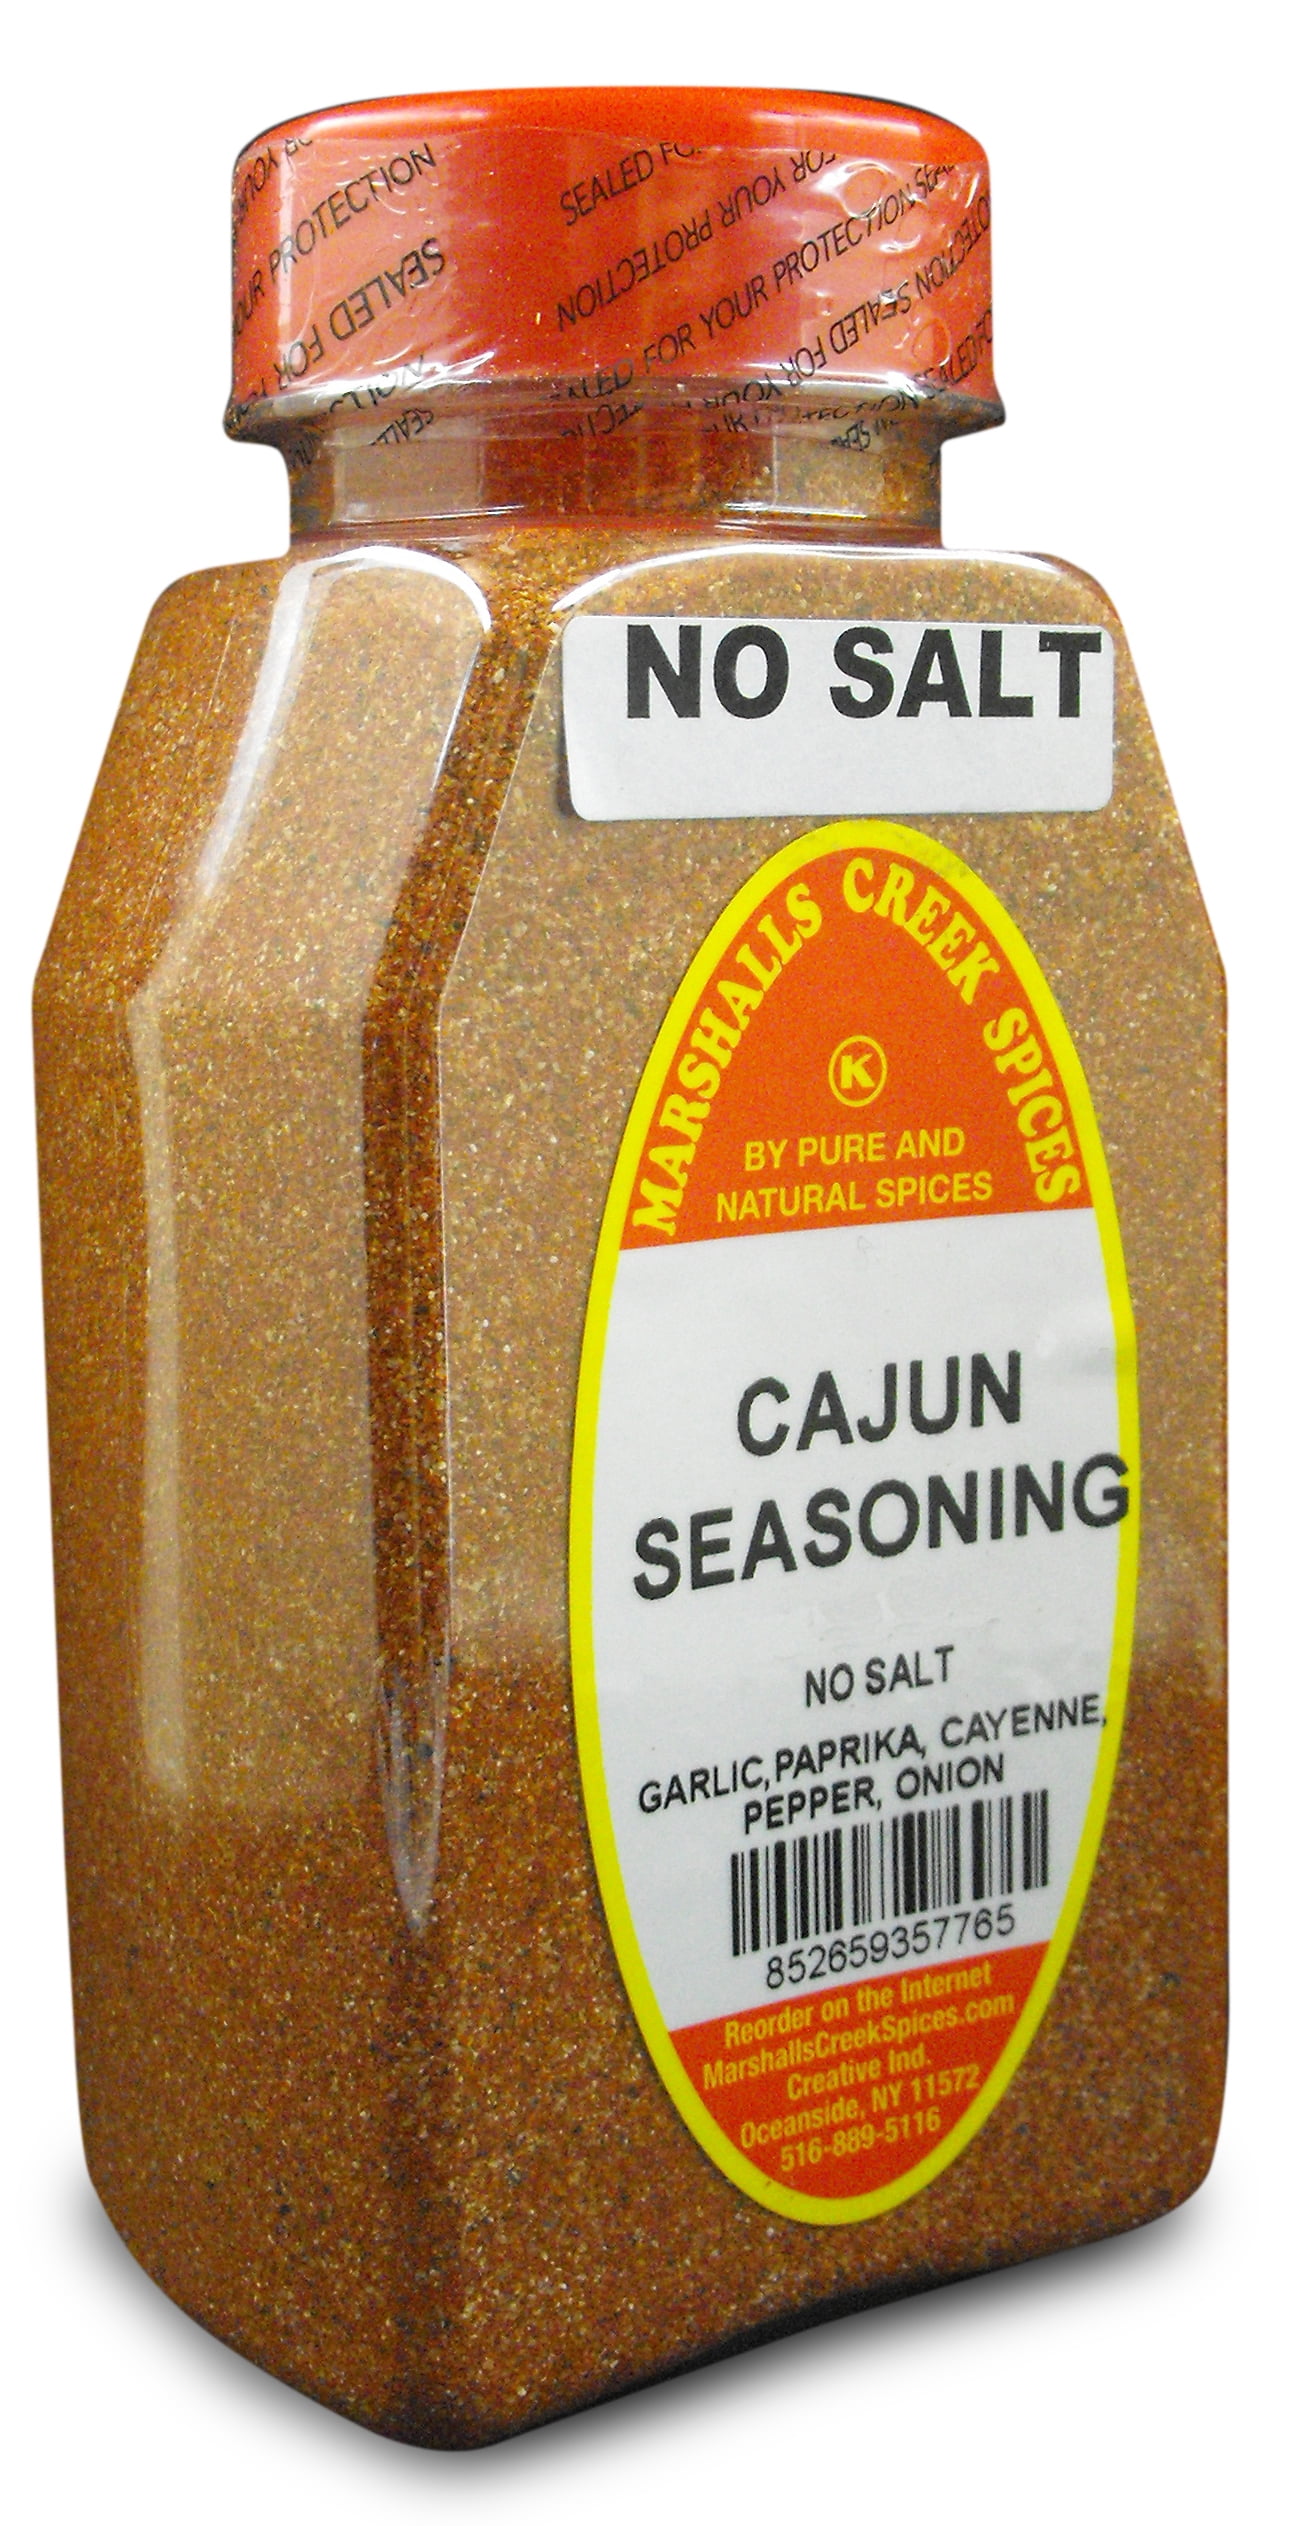 Kay's Cajun Salt-Free Seasoning – WLJ Spices